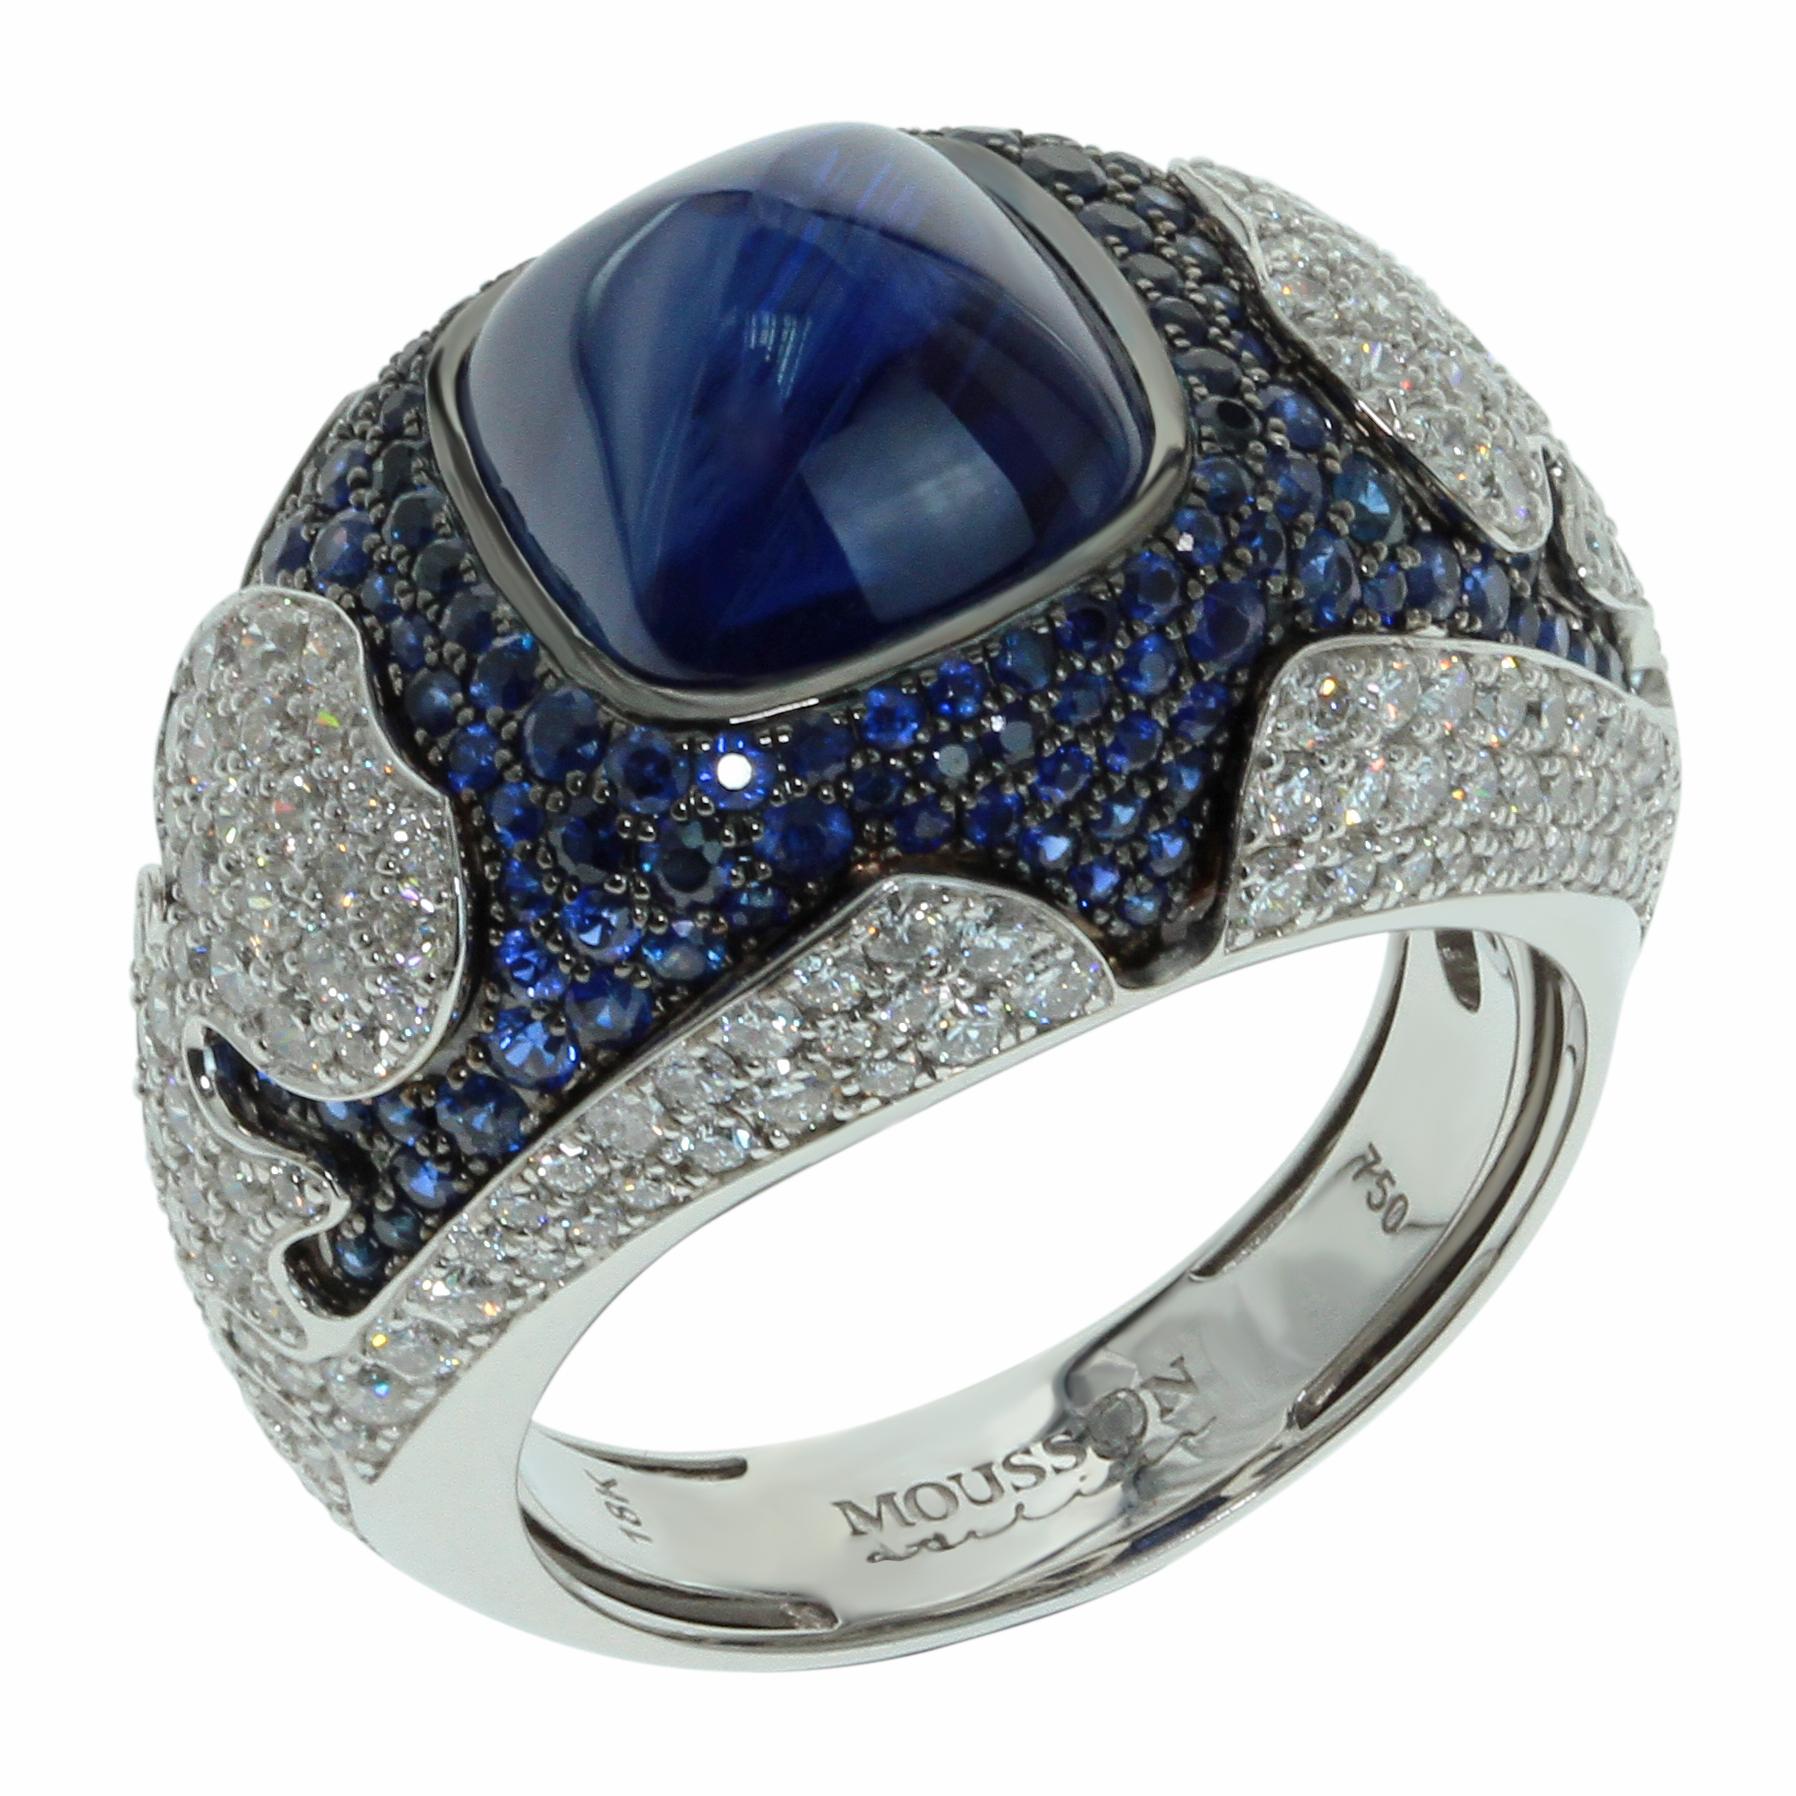 Blauer Saphir 10,31 Karat Diamanten 18 Karat Weißgold Maghreb Ring
Maghreb ist ein Name, den mittelalterliche arabische Seefahrer, Geographen und Historiker den westlich von Ägypten gelegenen Ländern Nordafrikas gaben. Inspiriert von der Kultur der